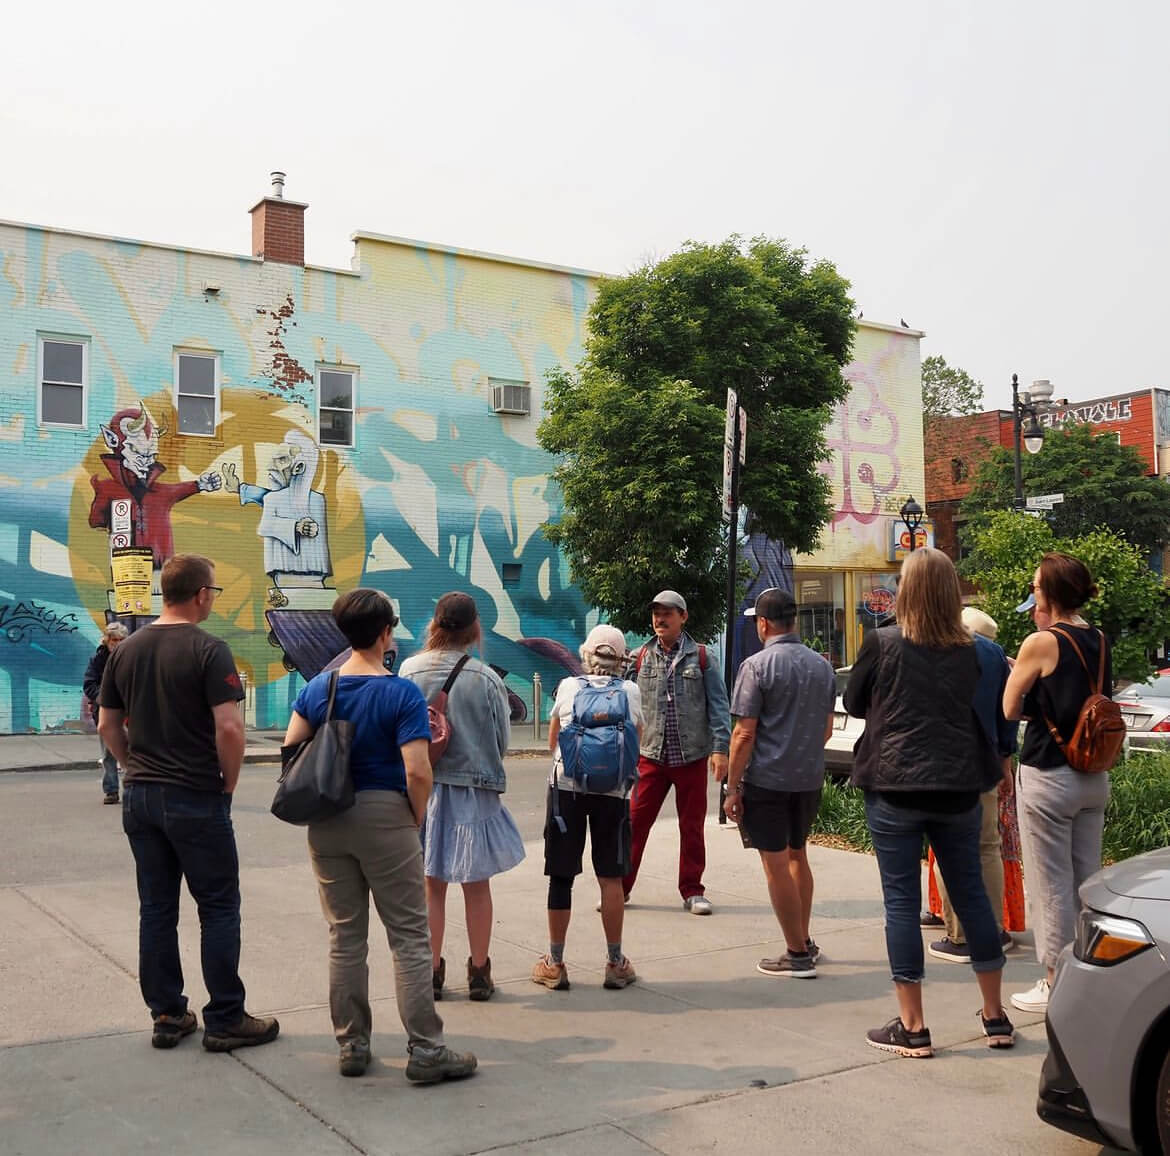 Un groupe de personnes écoute attentivement un guide pendant l'exploration de murales de rue colorées en milieu urbain.